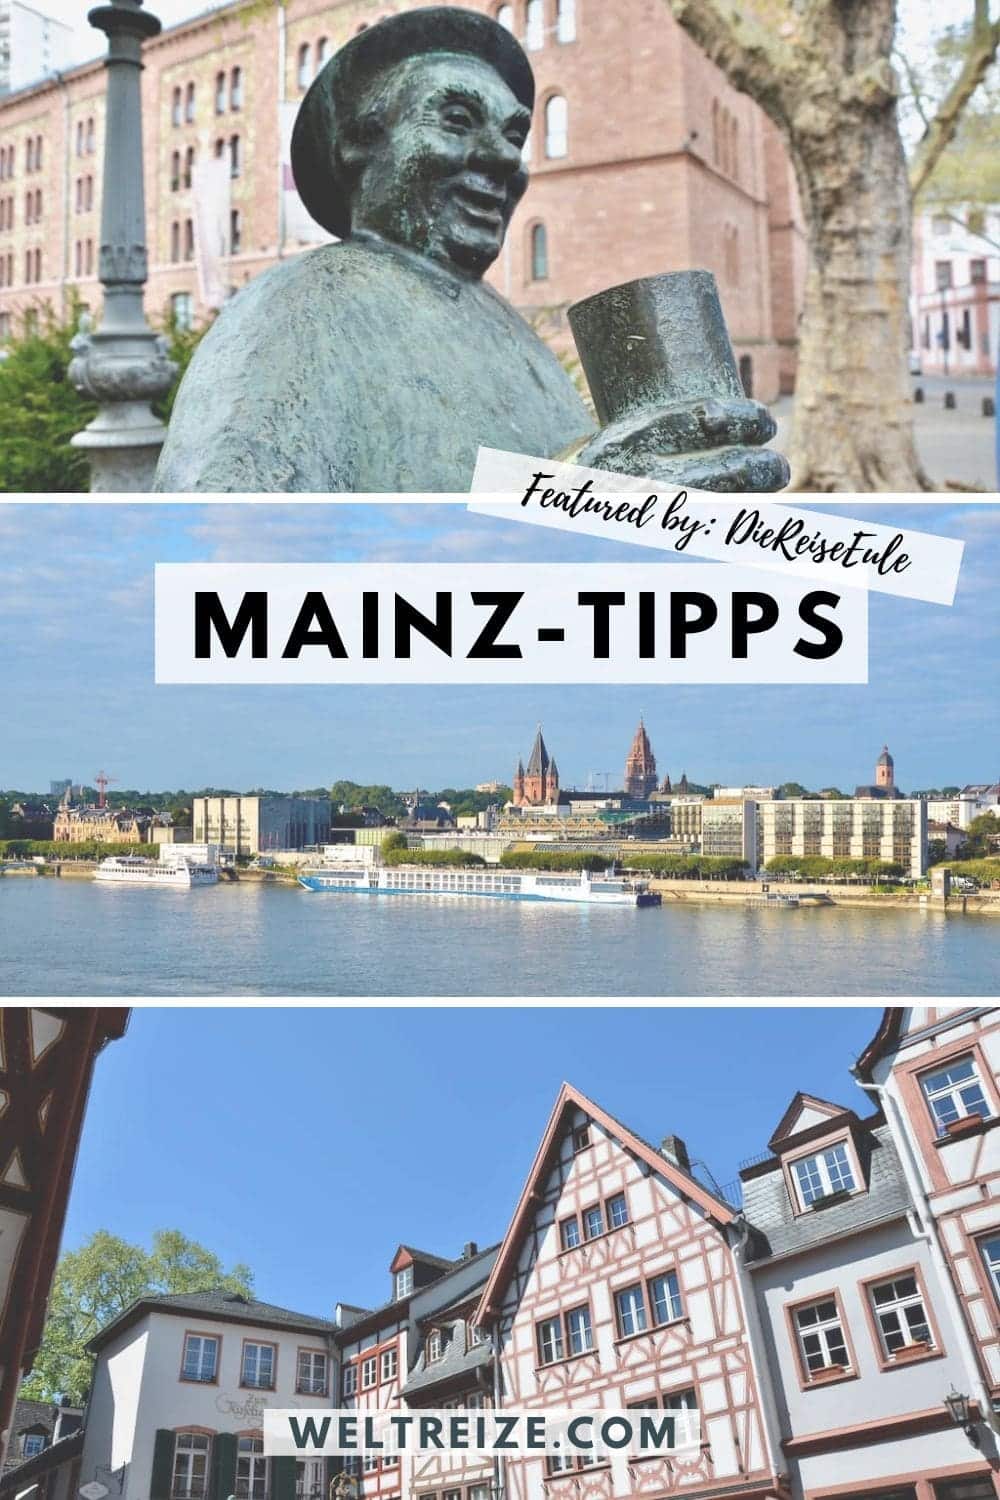 Mainz-Tipps weitersagen